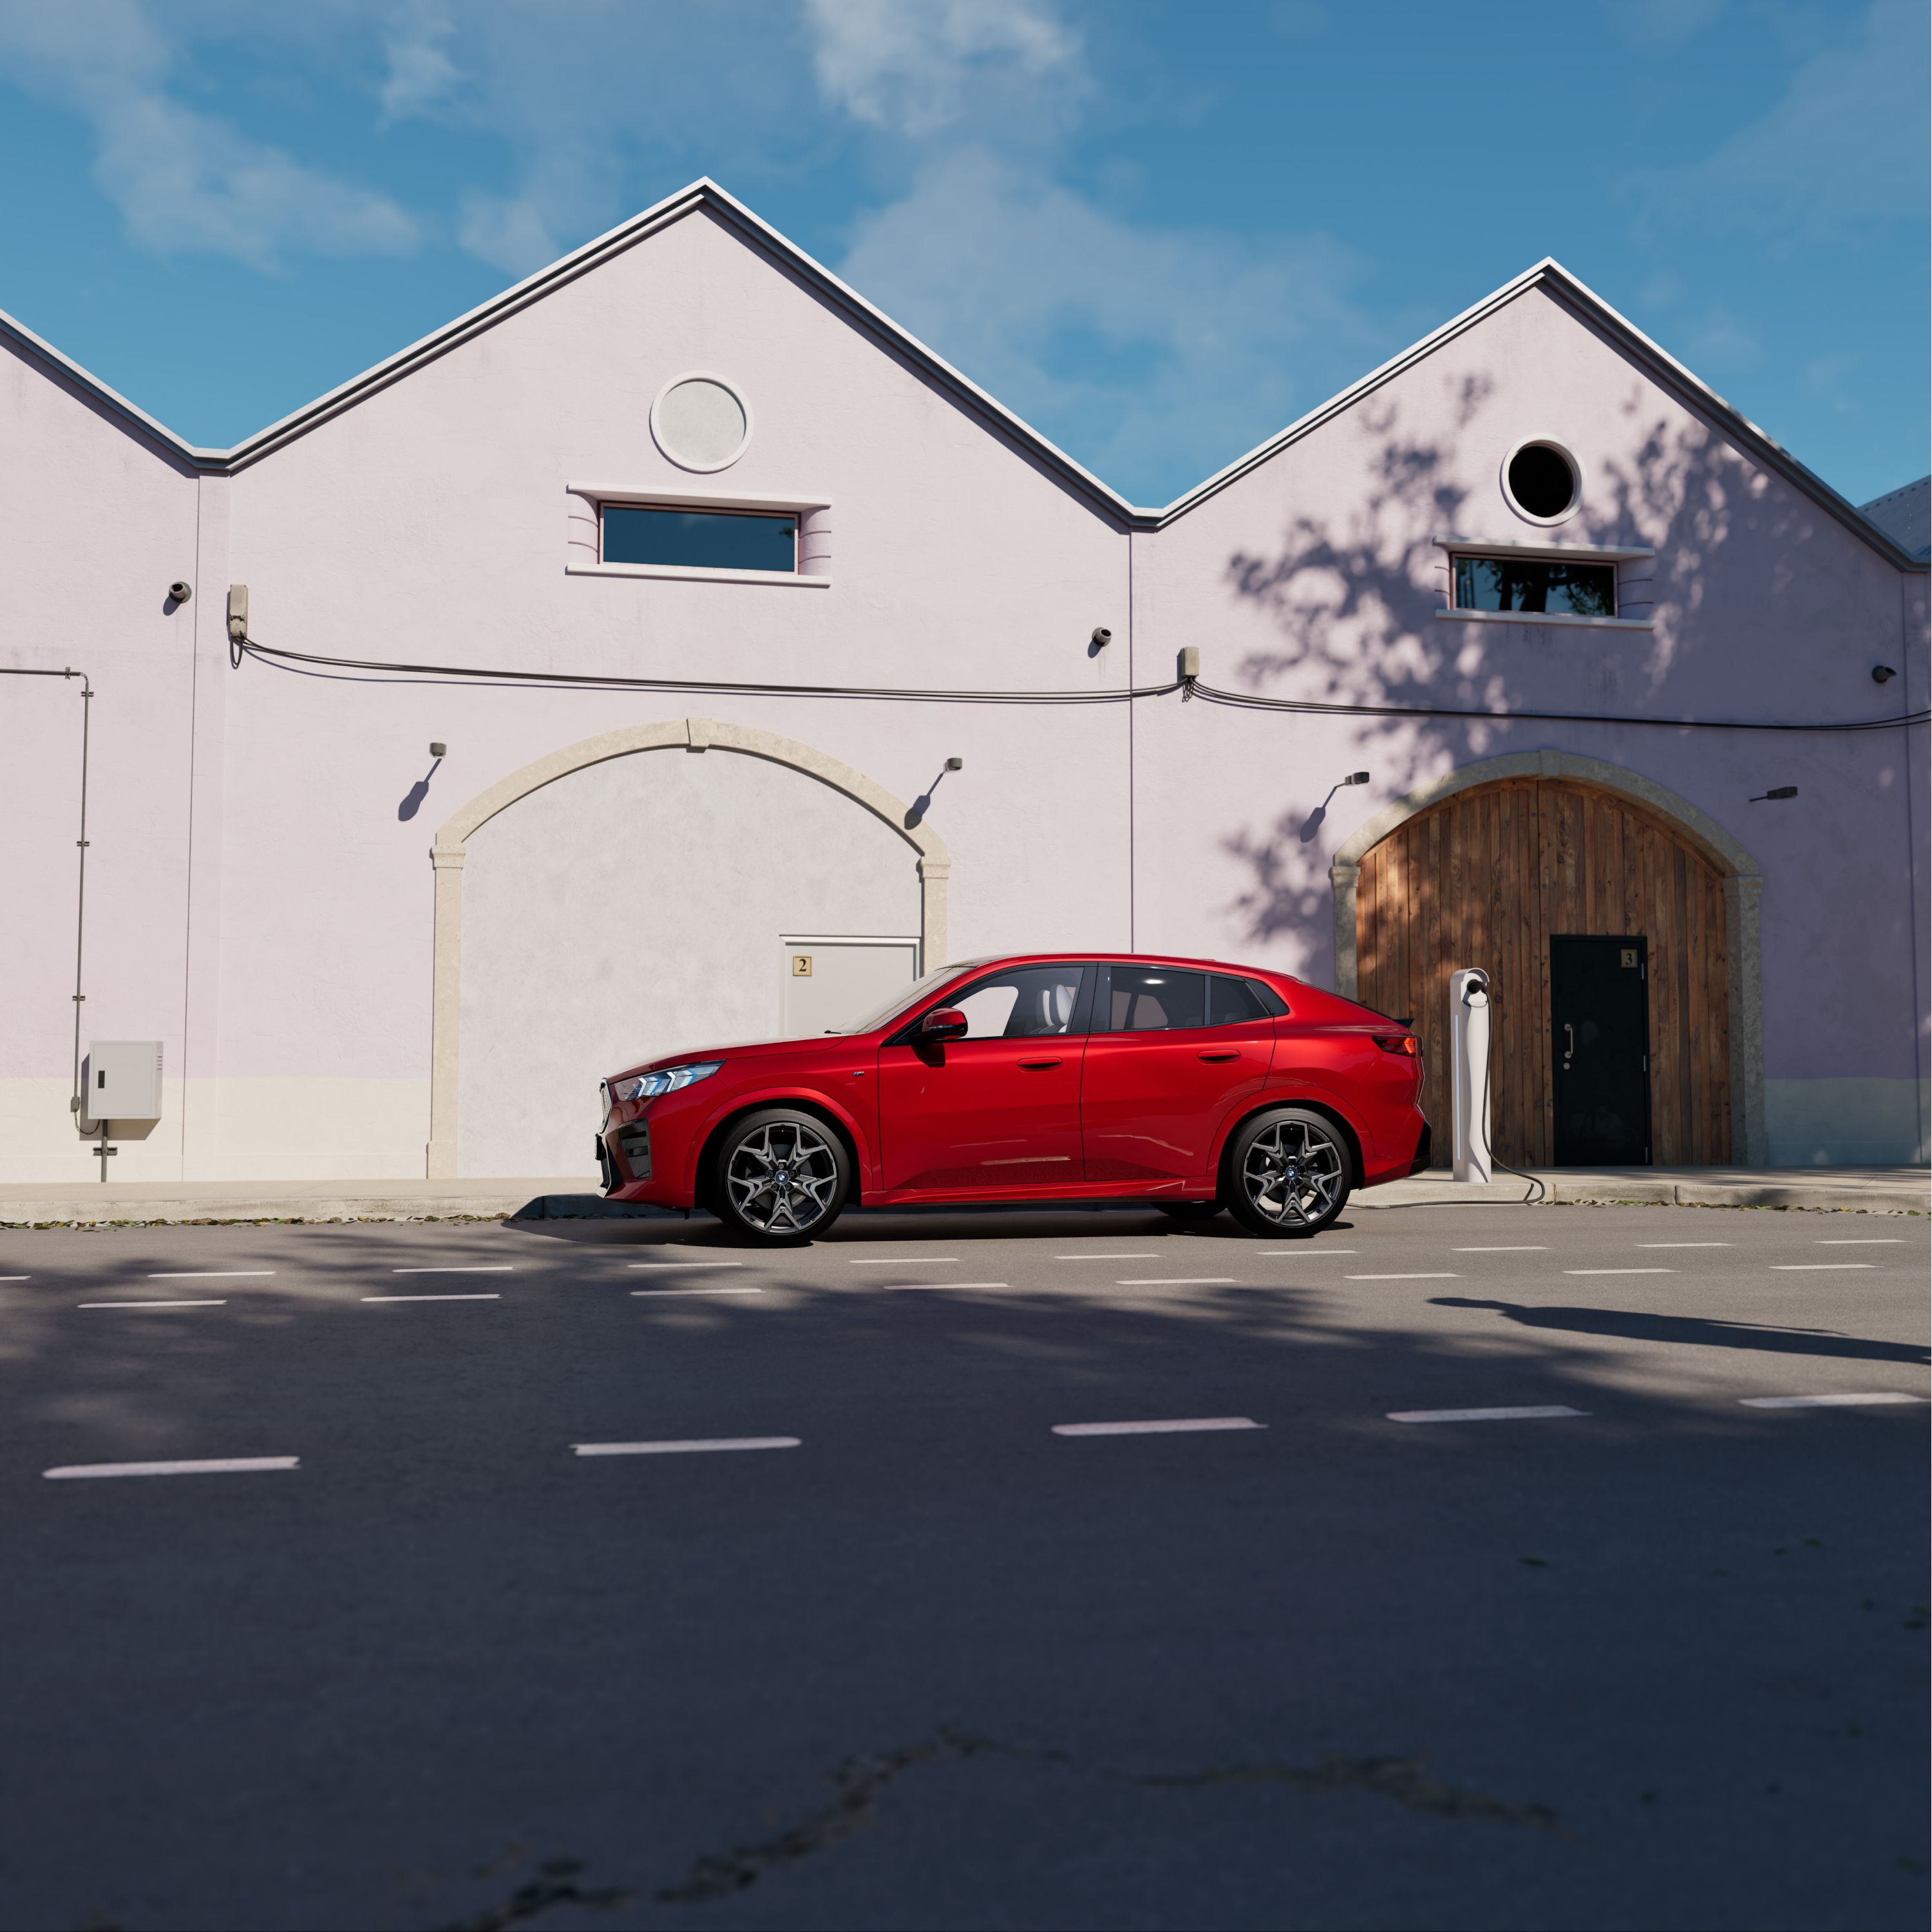 BMW iX2 цвета "Огненный Красный" перед загородным домом в солнечную погоду